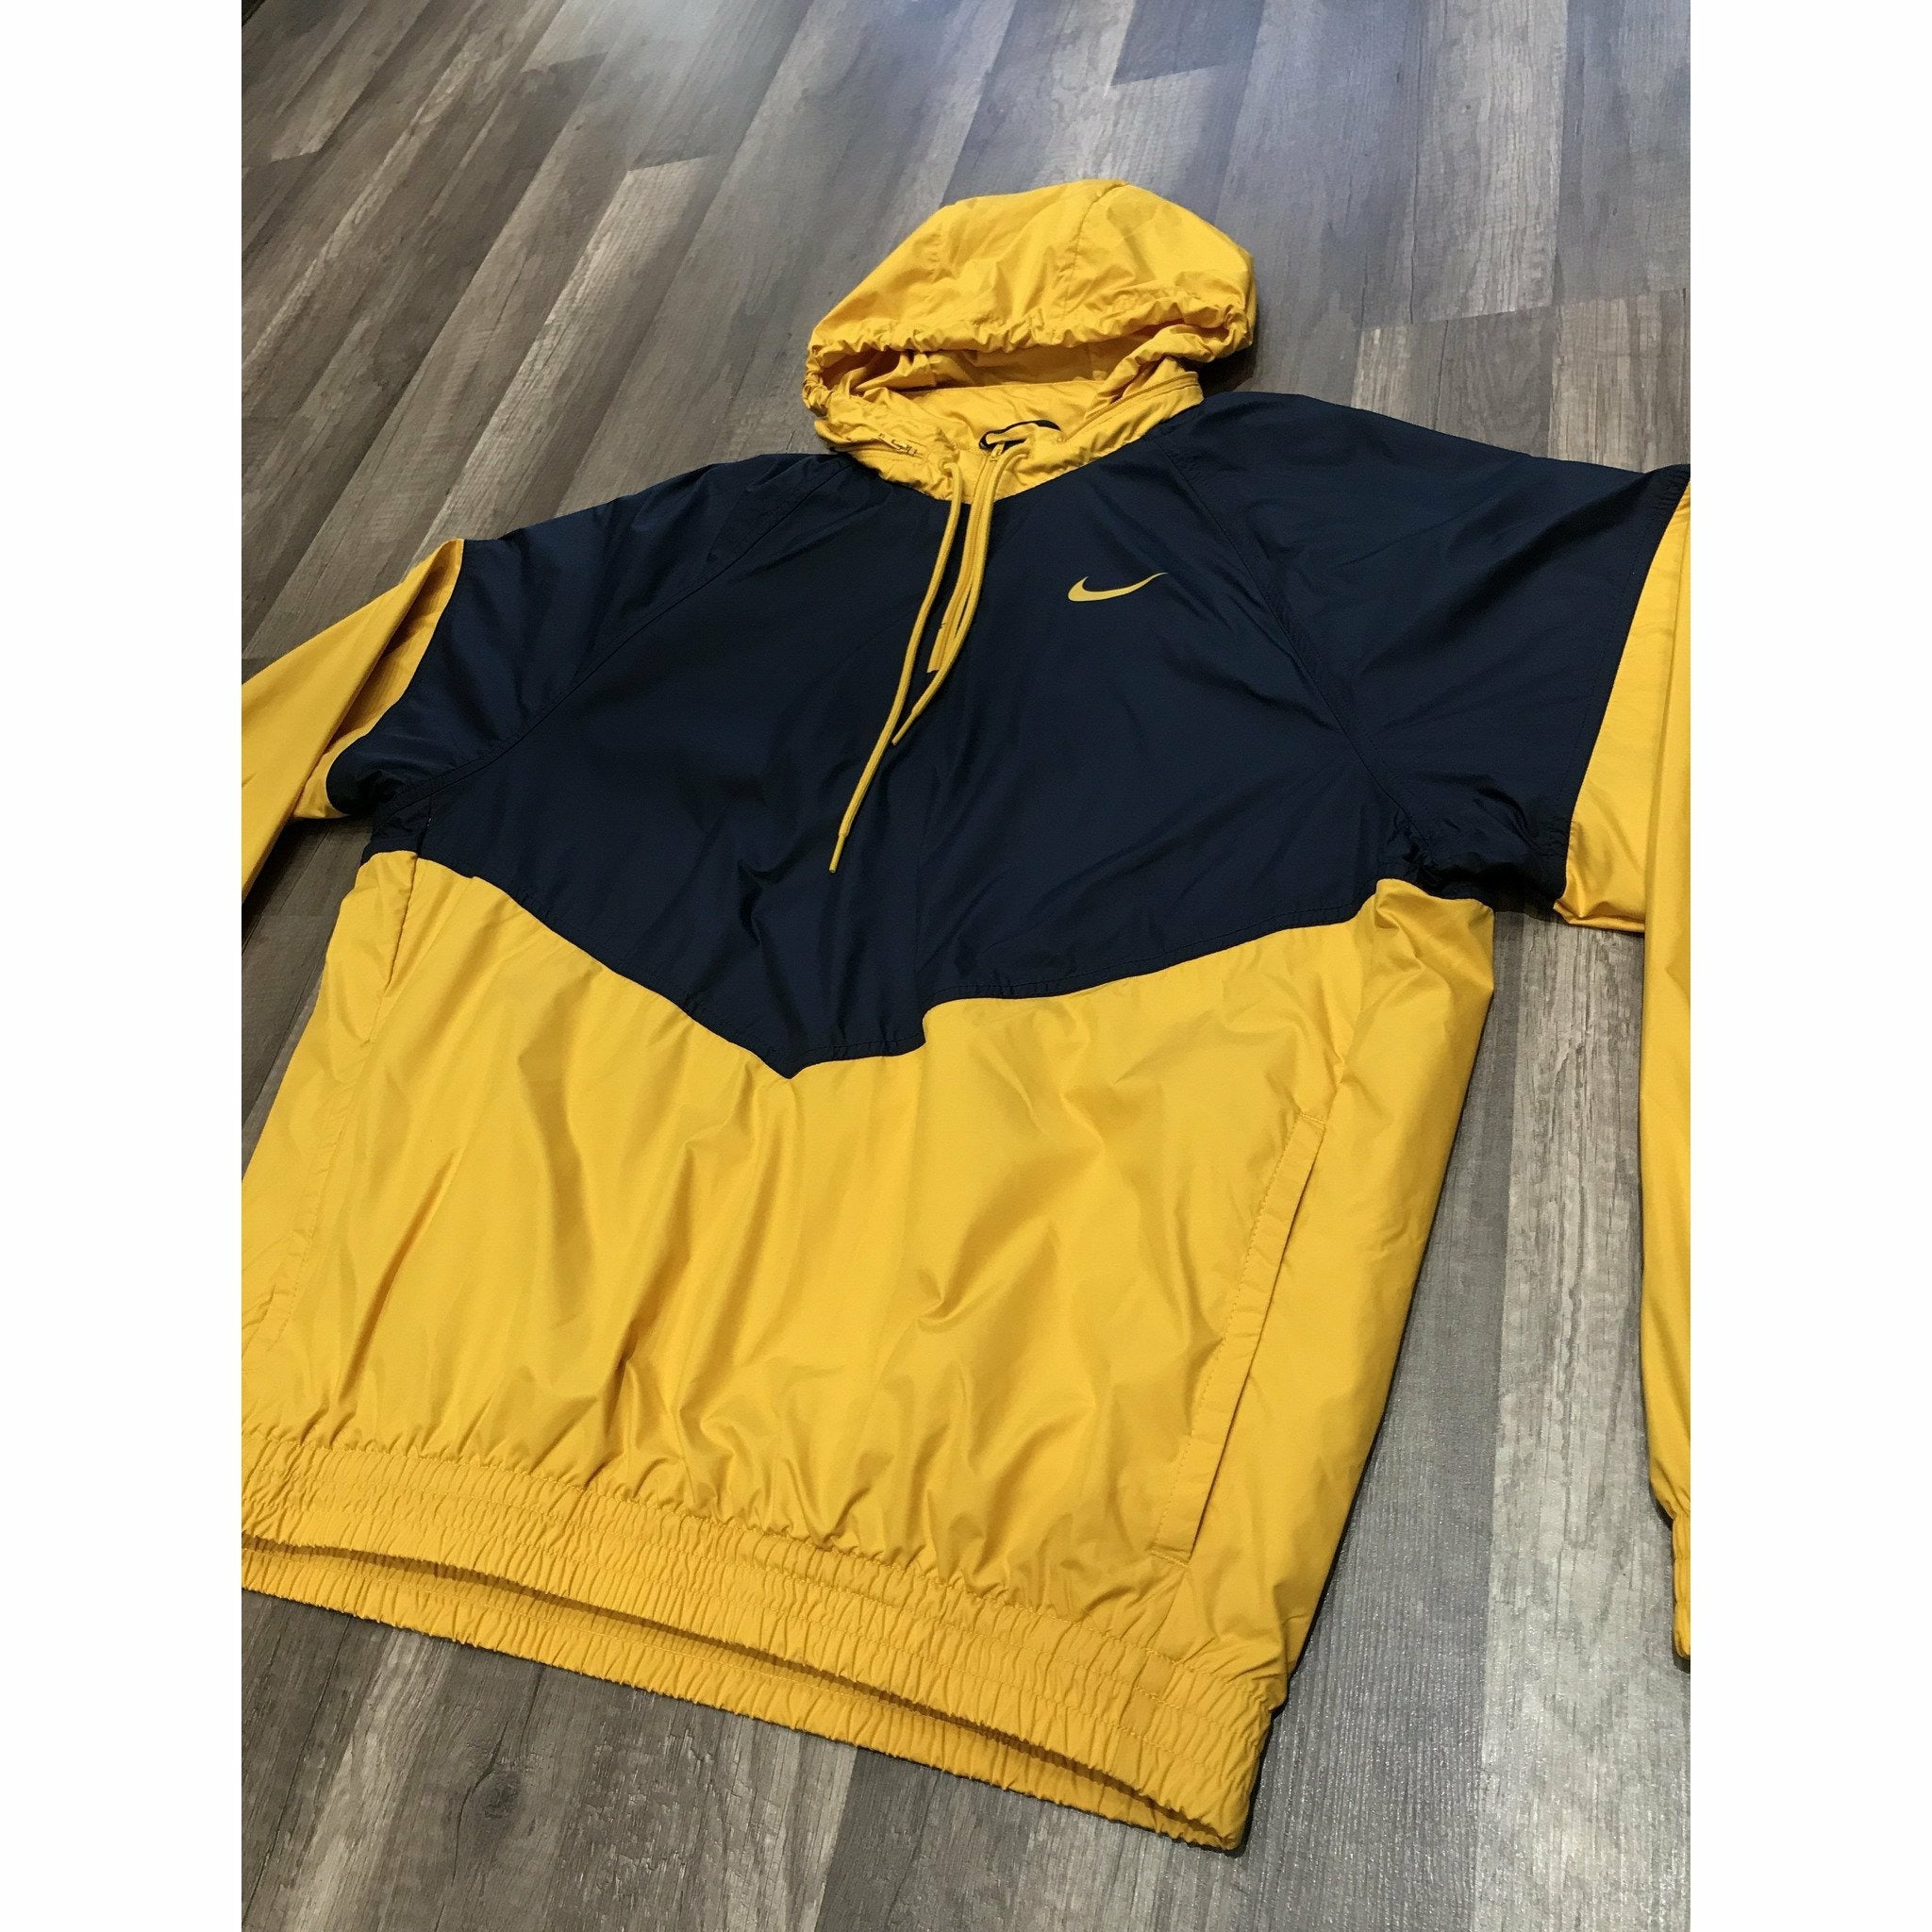 yellow nike sb hoodie